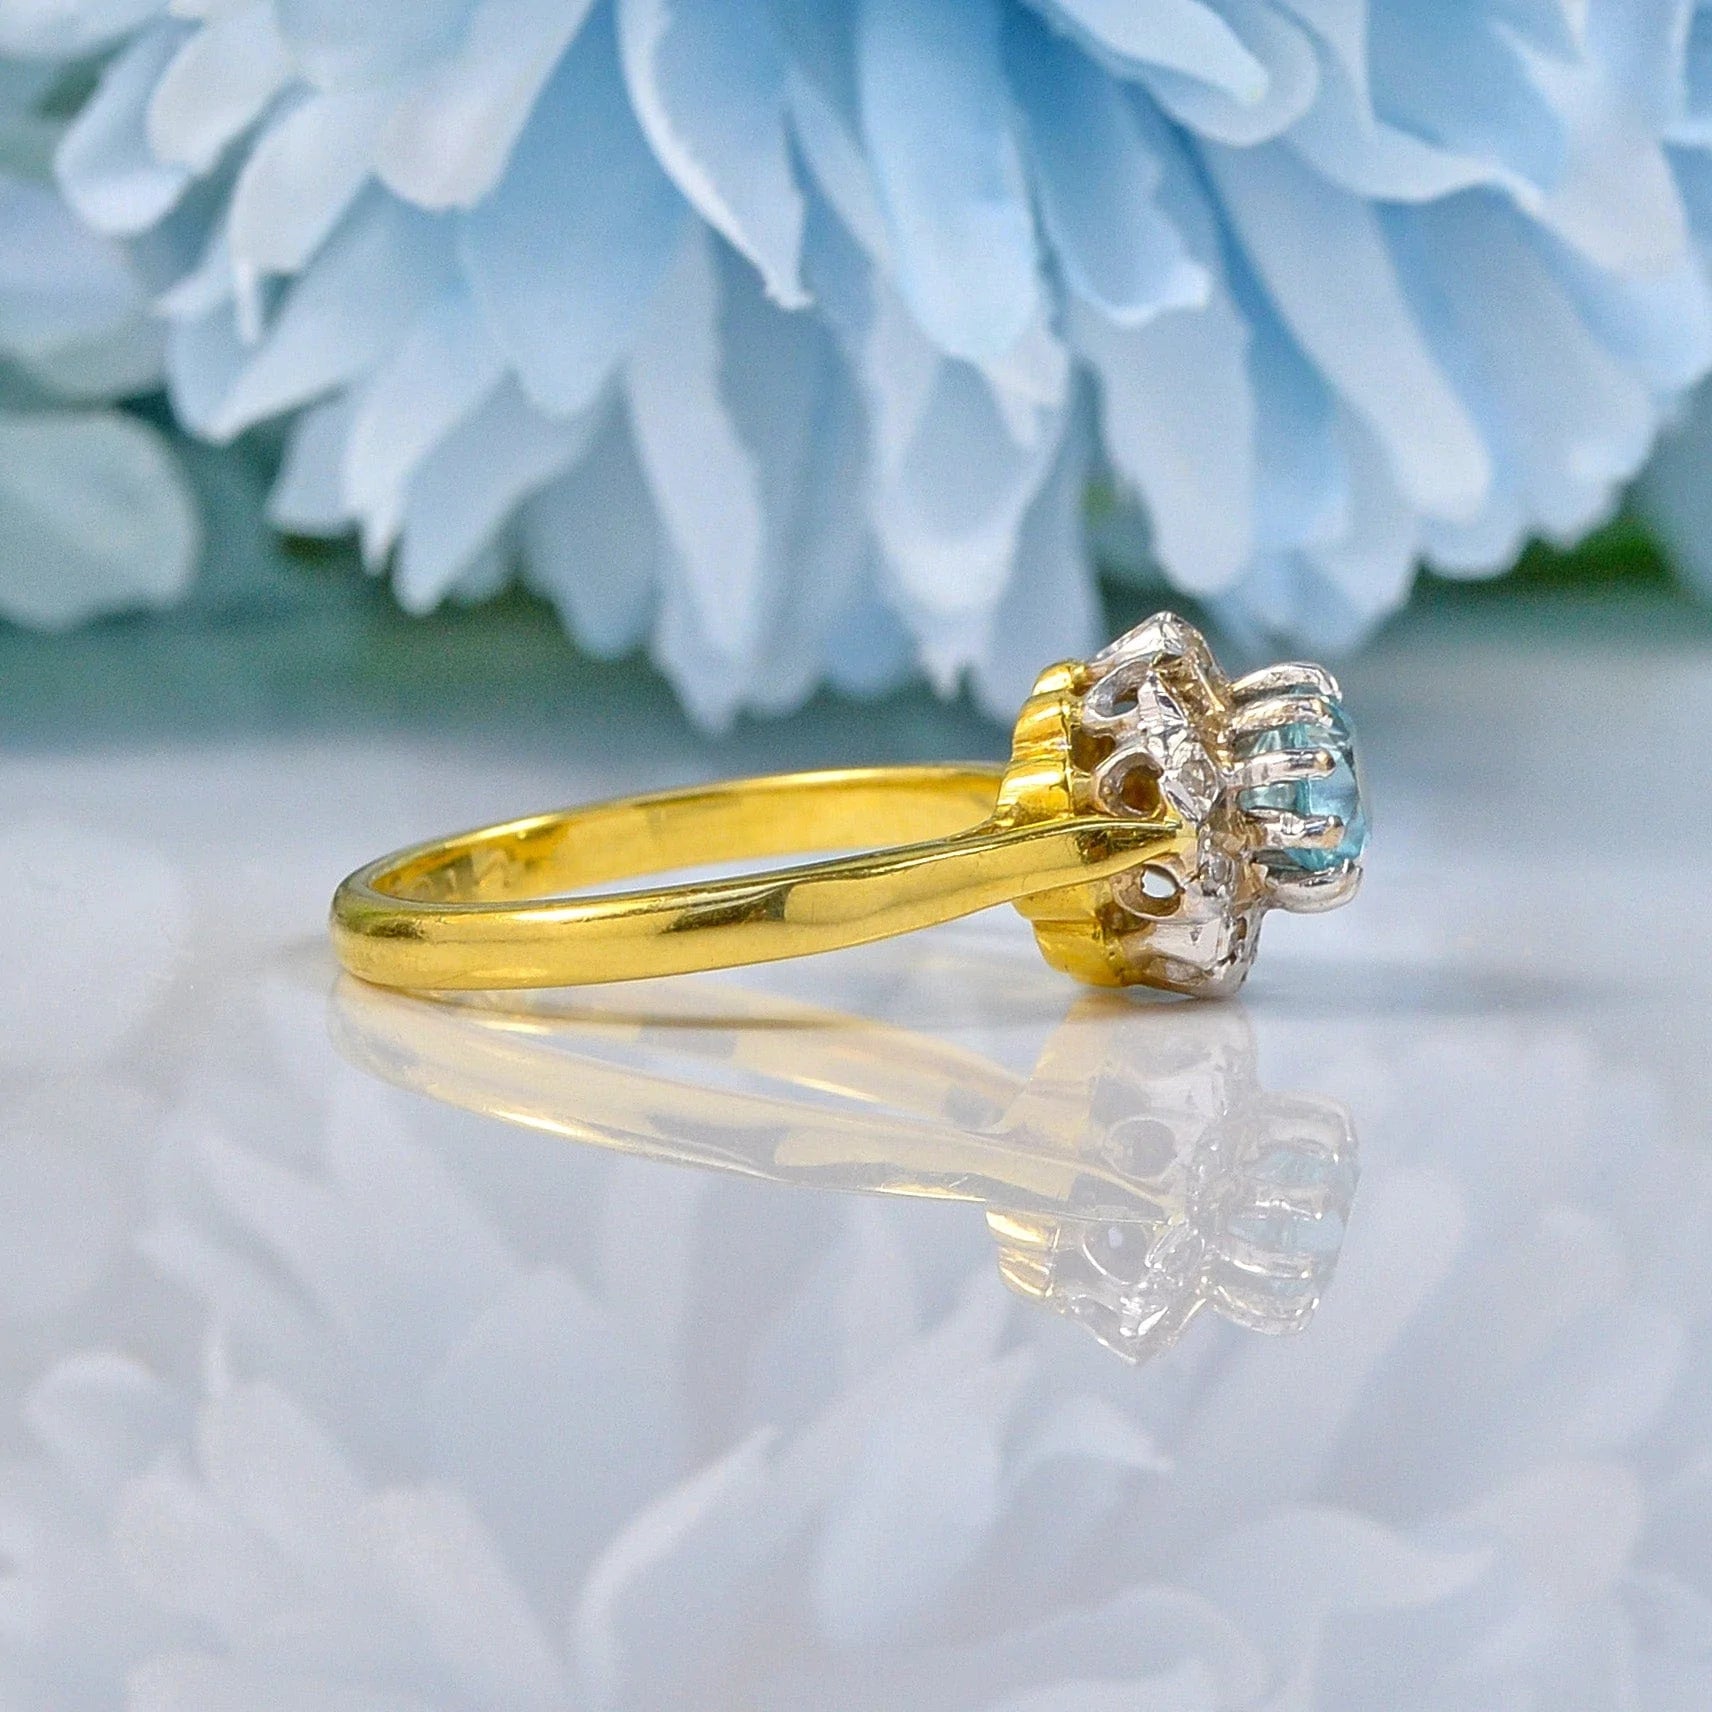 Ellibelle Jewellery VINTAGE AQUAMARINE & DIAMOND 18CT GOLD HALO RING